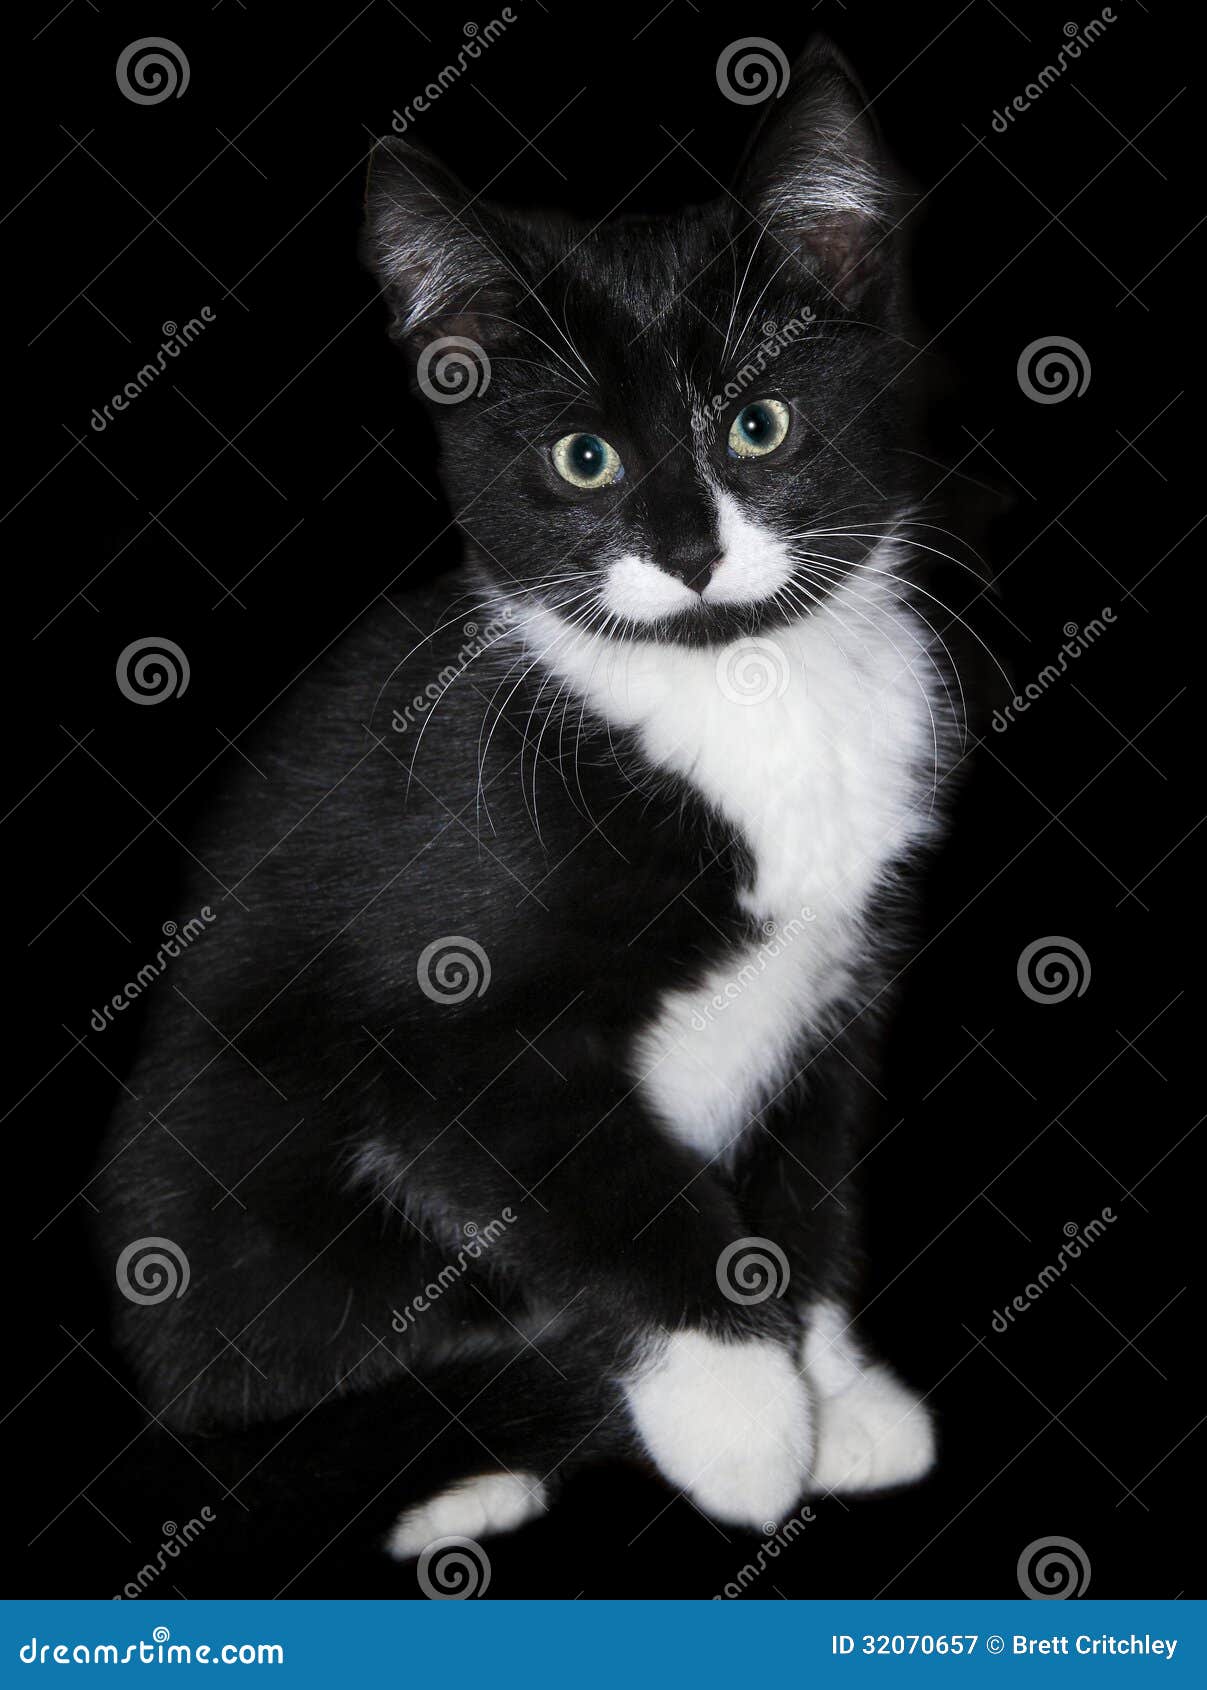 Jogo do gato preto imagem de stock. Imagem de preto, branco - 66726499